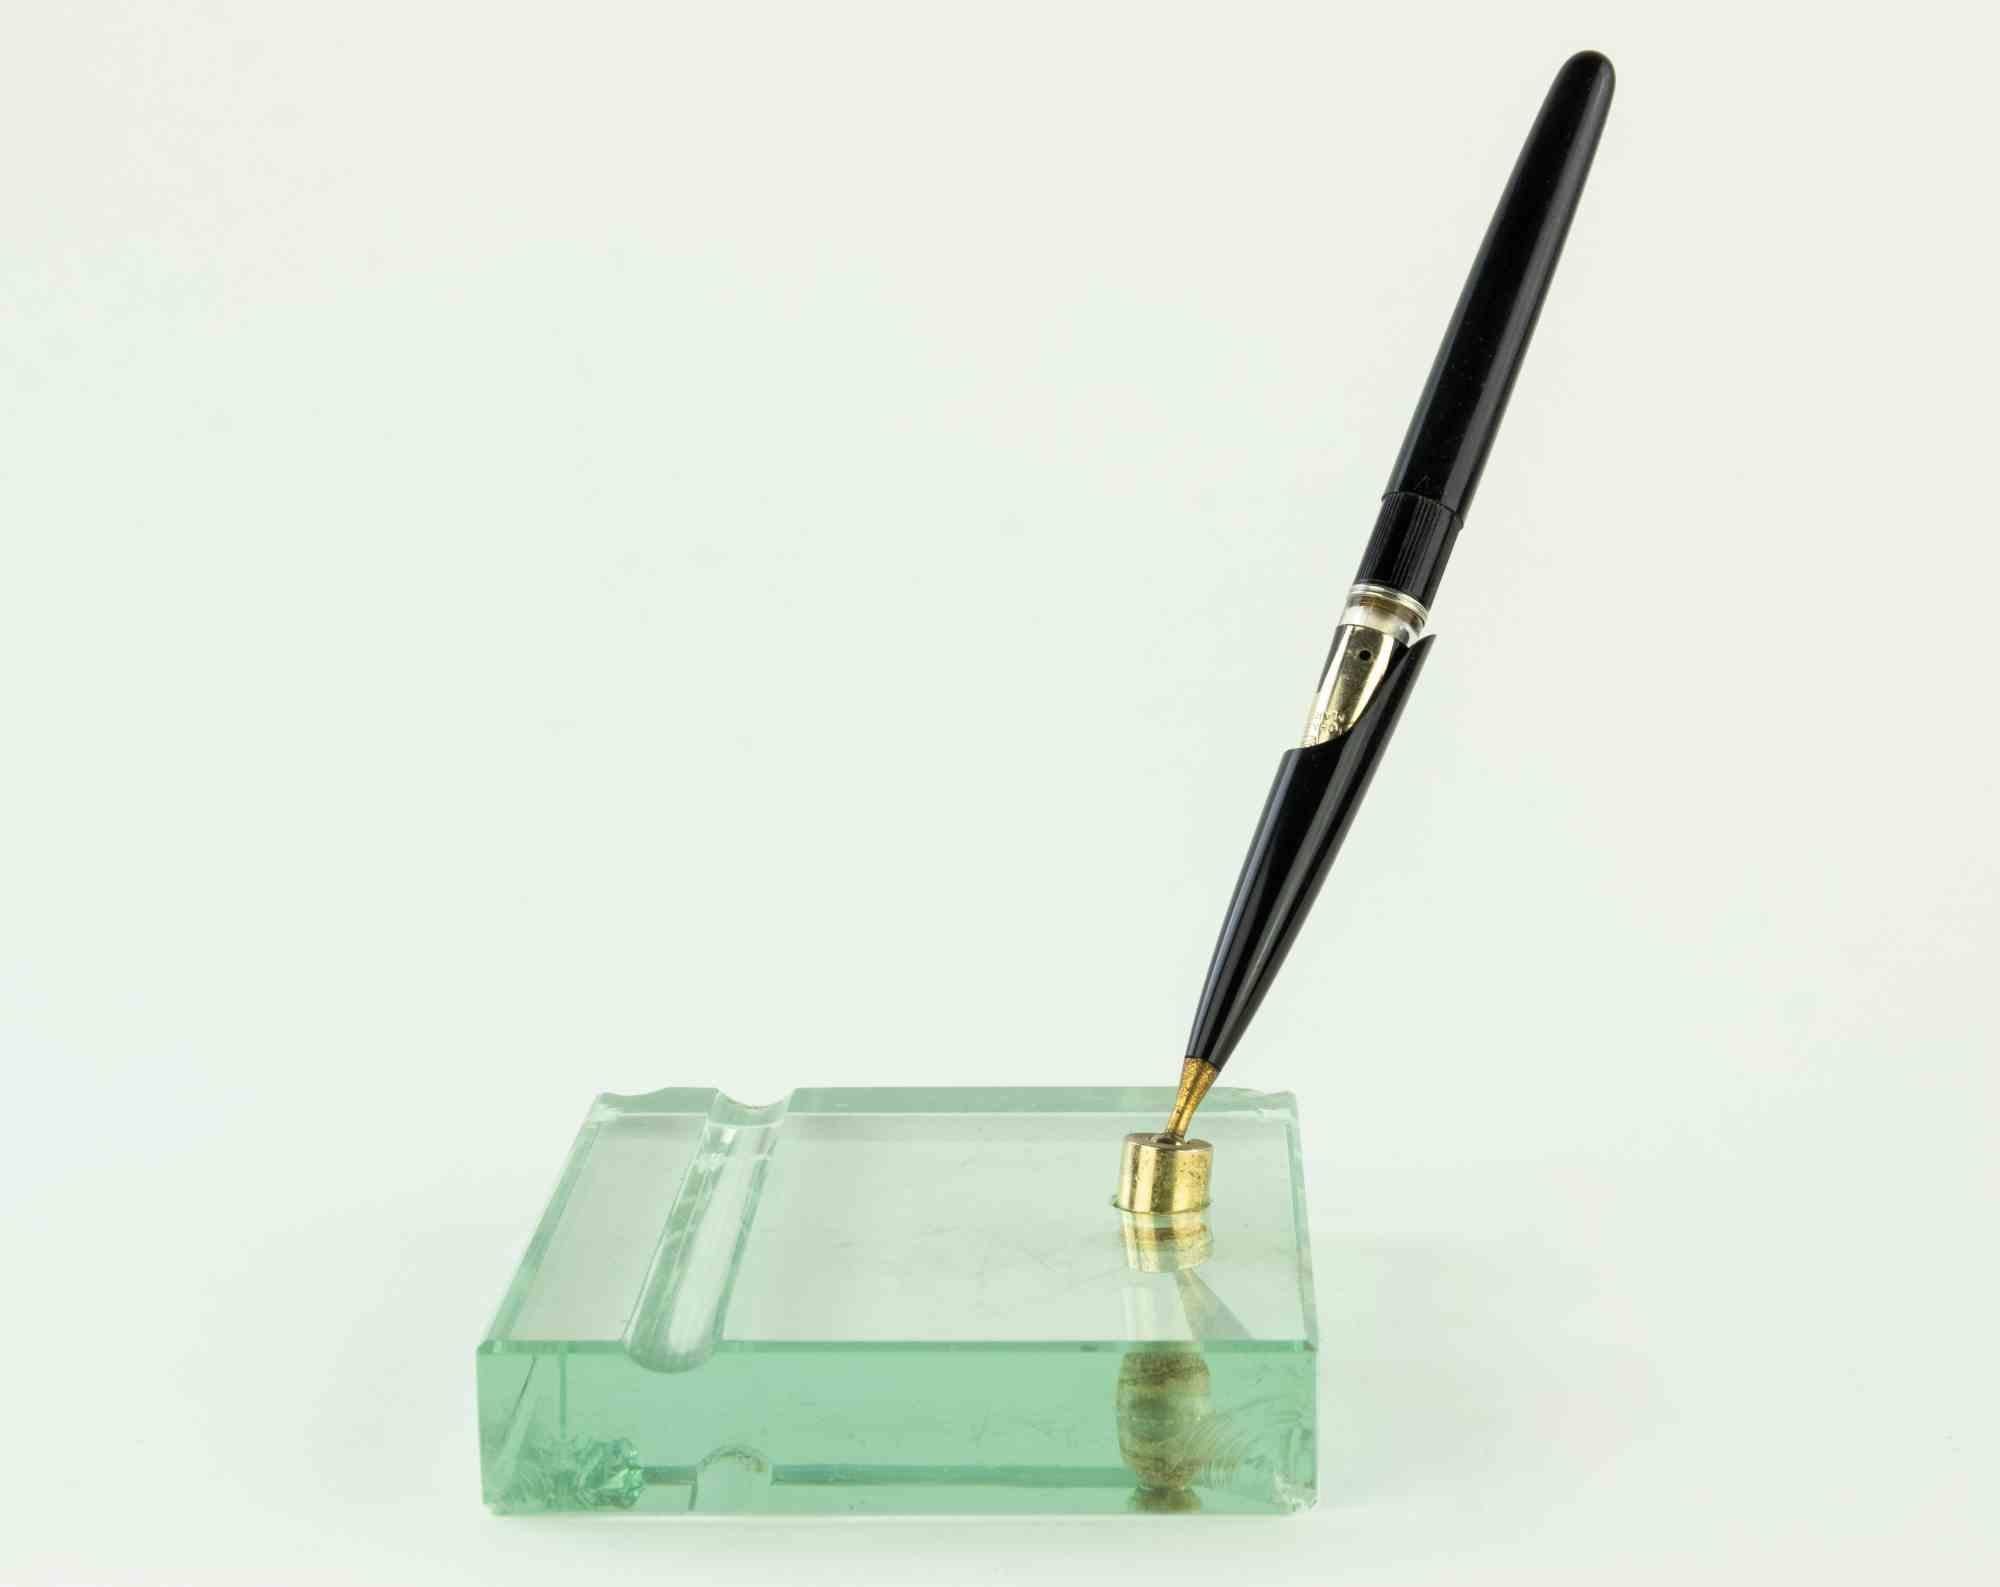 Der Vintage-Stifthalter ist ein dekoratives Objekt aus den 1960er Jahren.

Ein dekorativer Stifthalter mit Sockel aus Kunstglas. Guter Zustand bis auf einige kleine Chips.

Ein elegantes Objekt zum Sammeln.